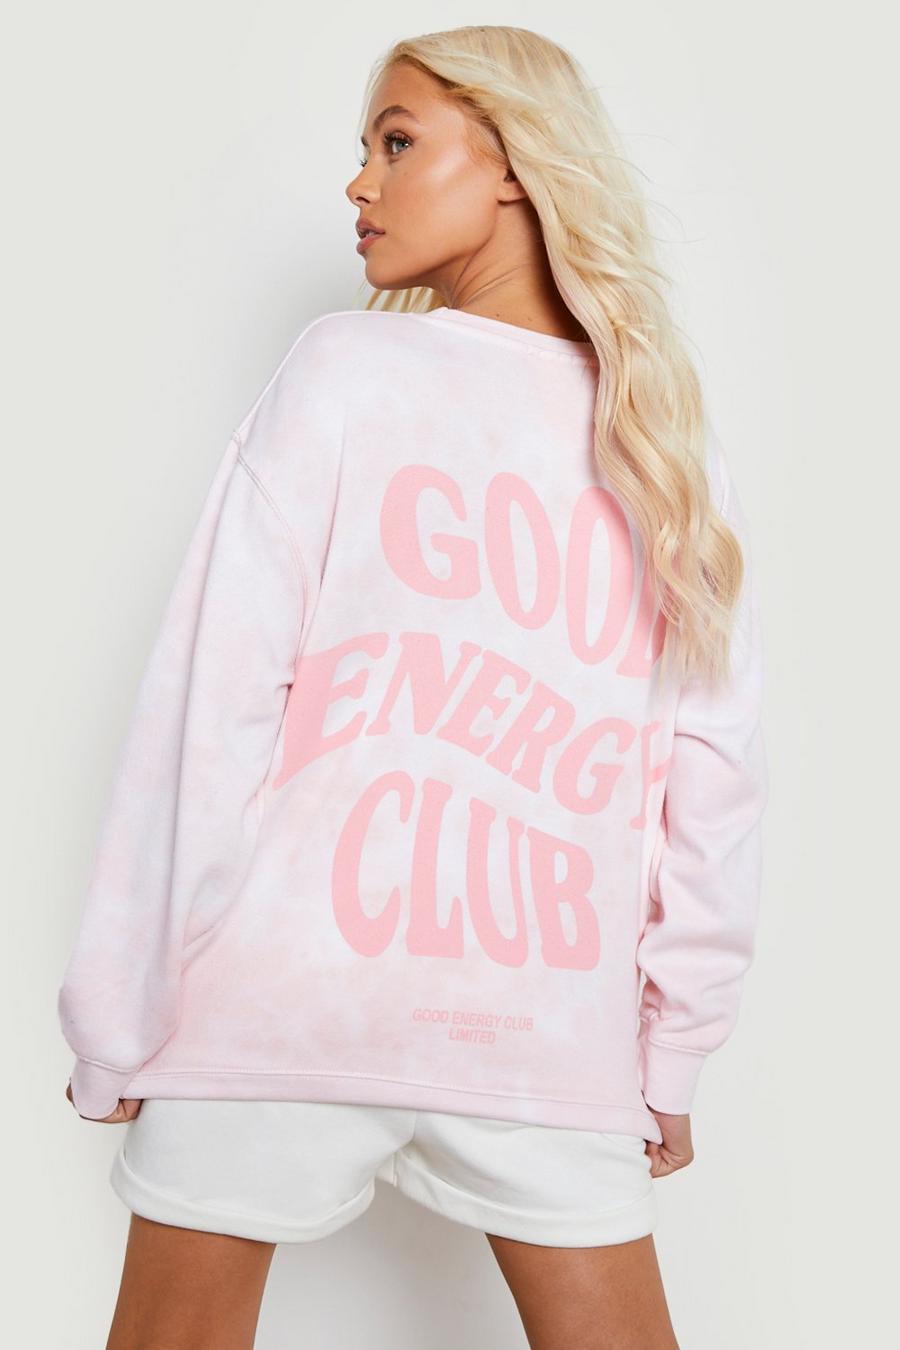 Pink Good Energy Club Printed Tie Dye Sweater